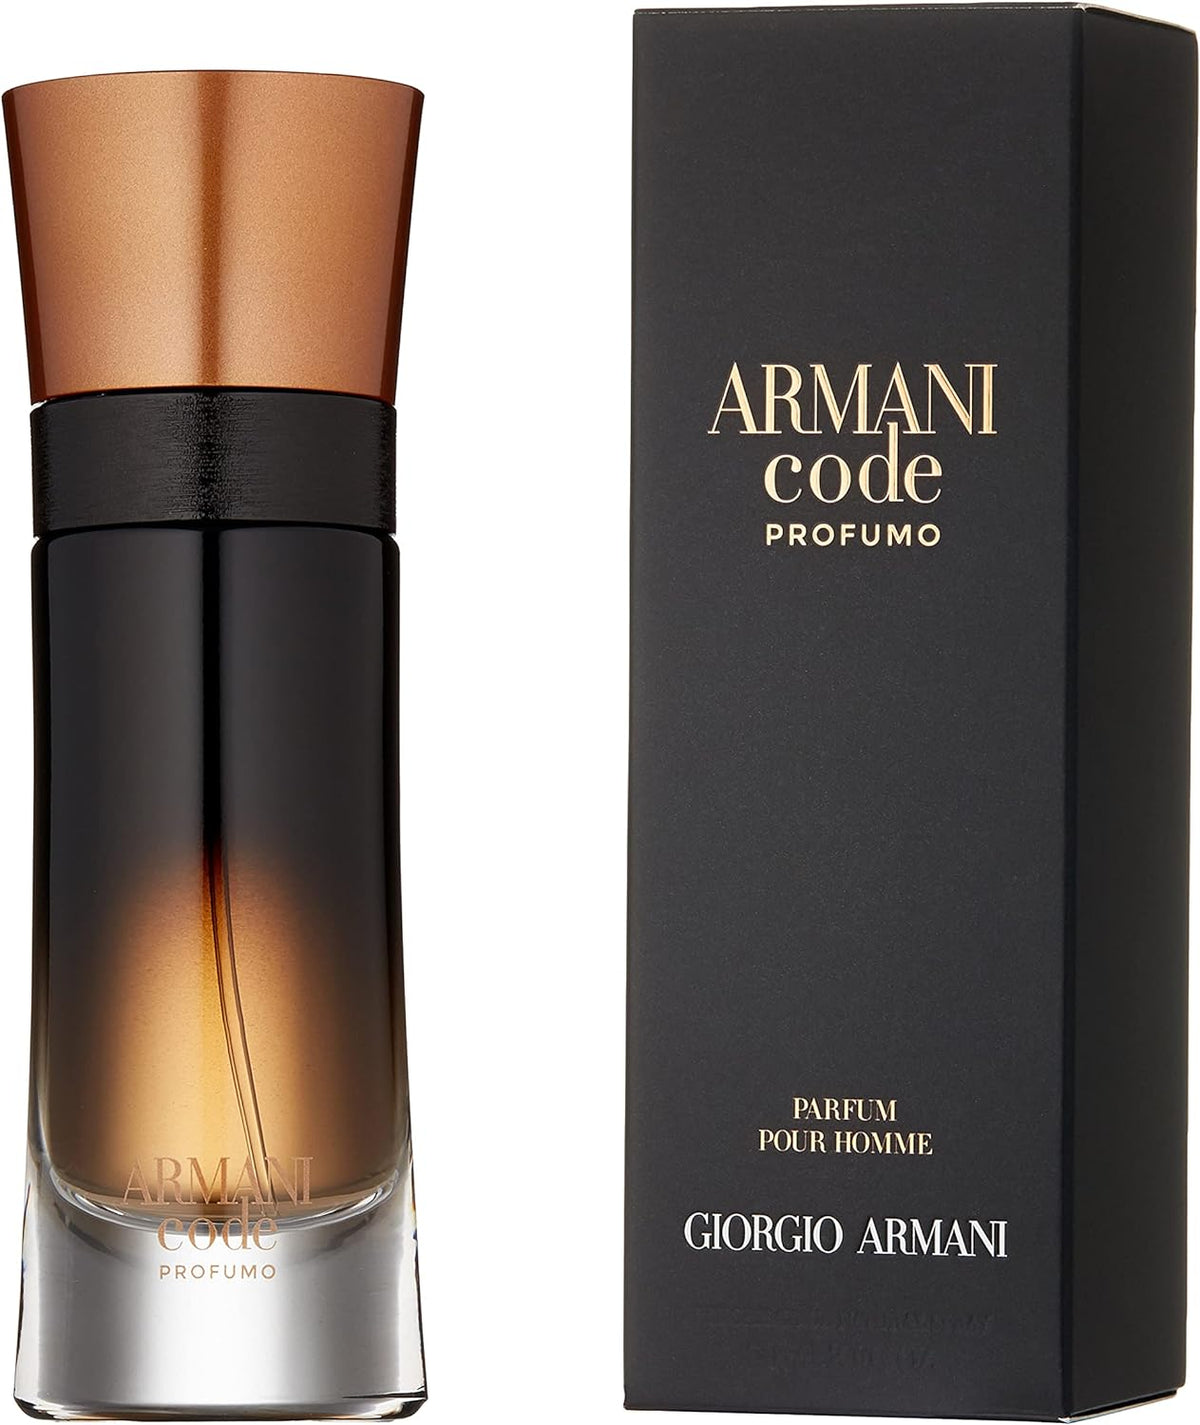 Armani Code Profumo by Giorgio Armani for Men - Parfum - 60ml